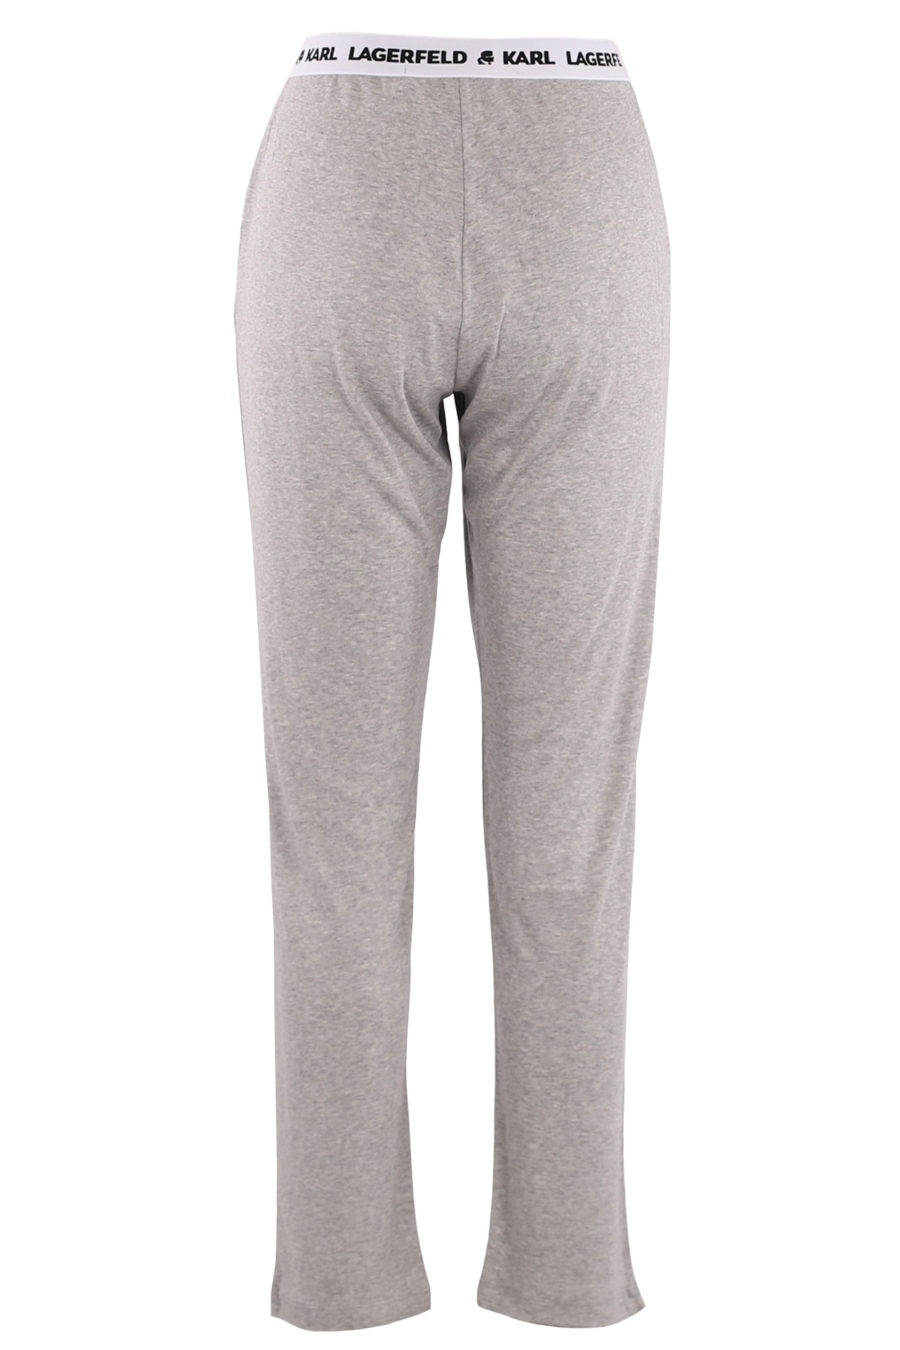 Grey unisex trousers with logo - fe3f909997a74e1cd20c17cb718a6e92aae0ec70